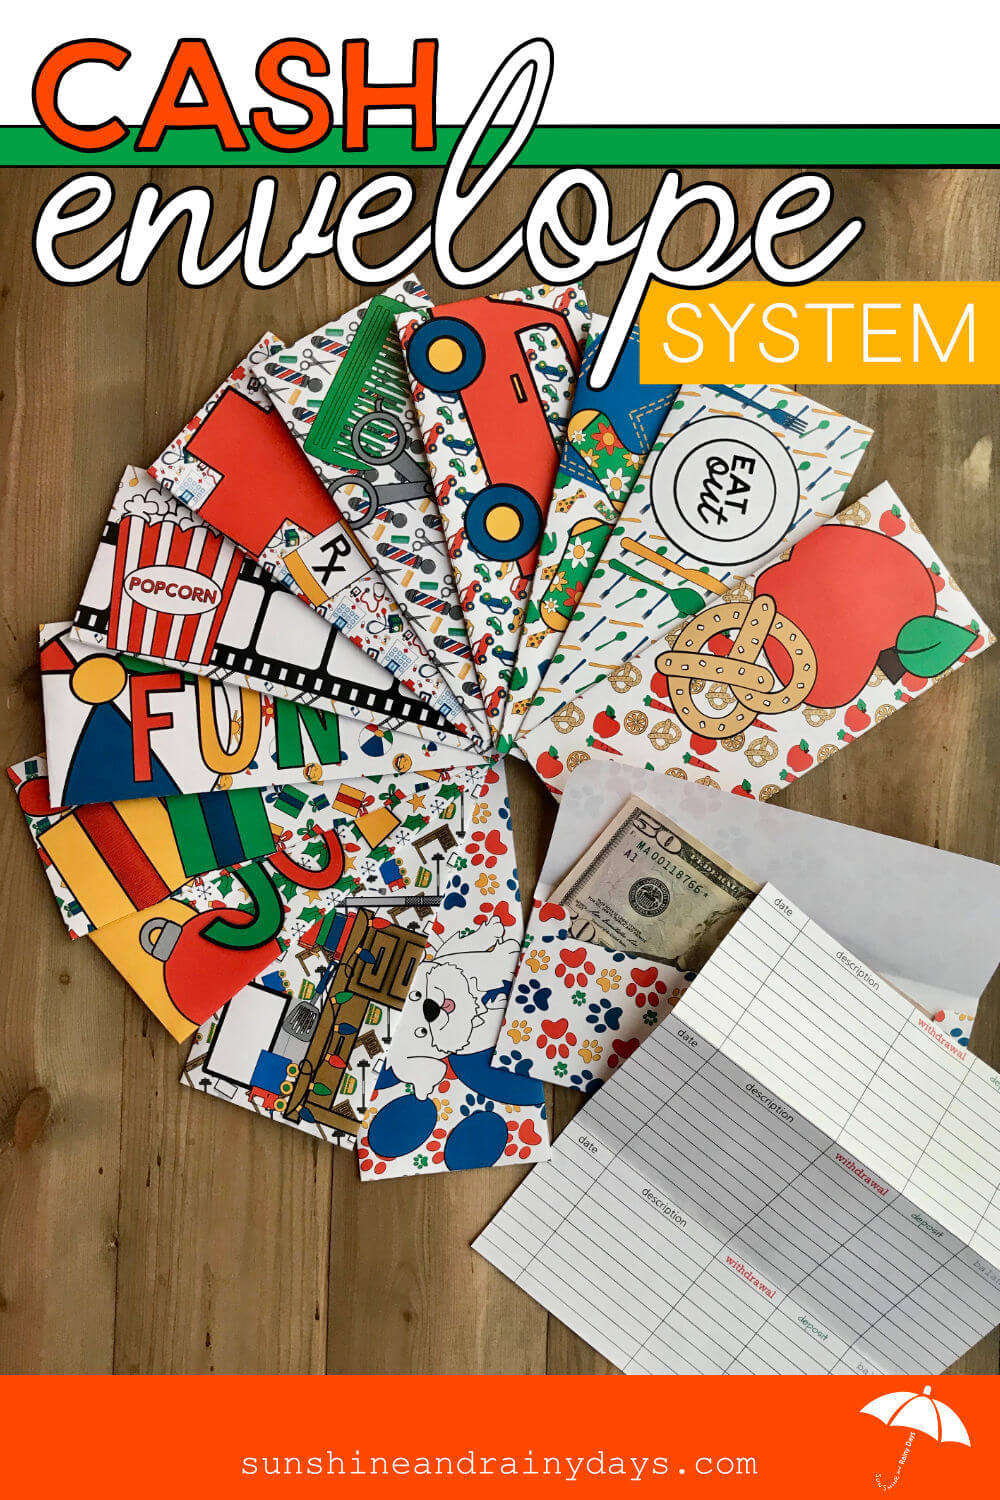 Cash Envelope System (PDF)